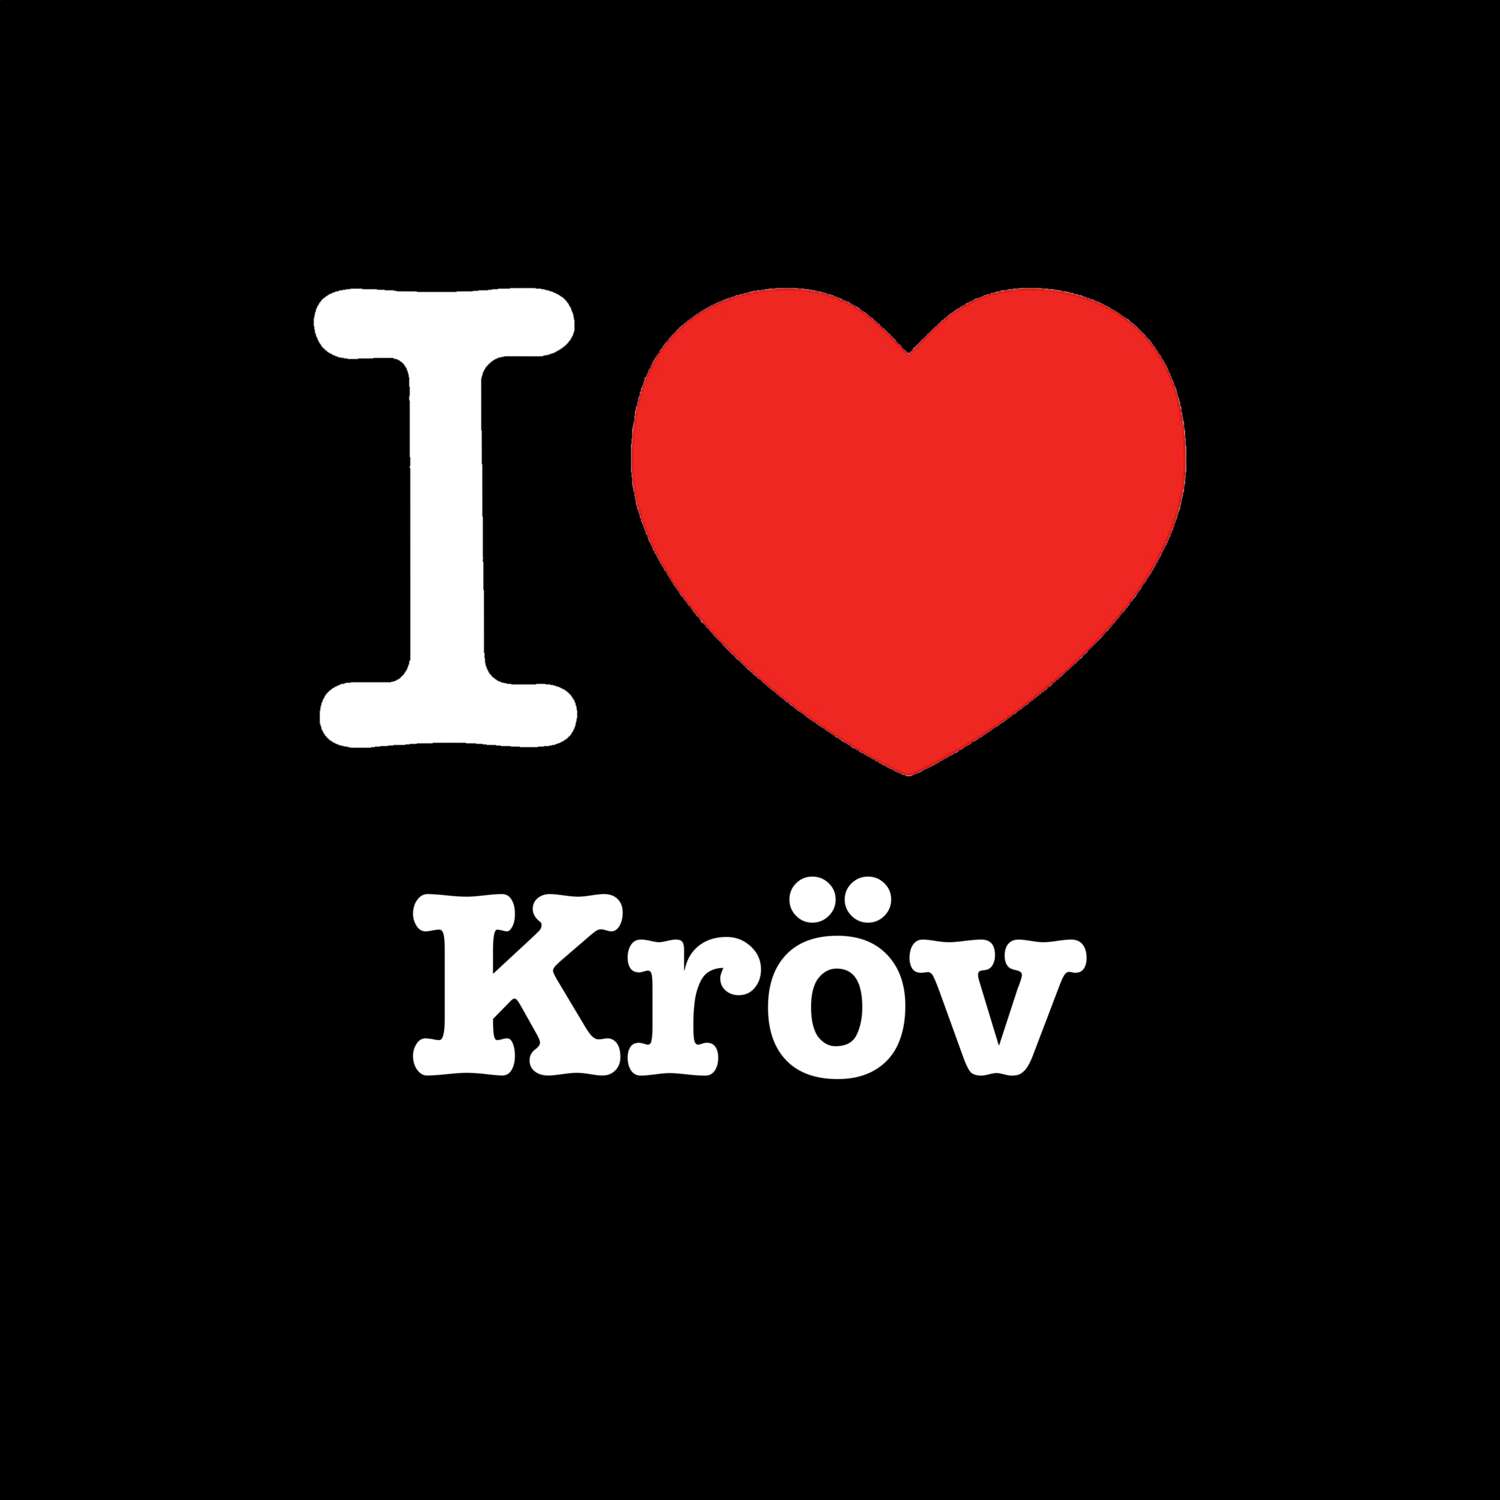 Kröv T-Shirt »I love«